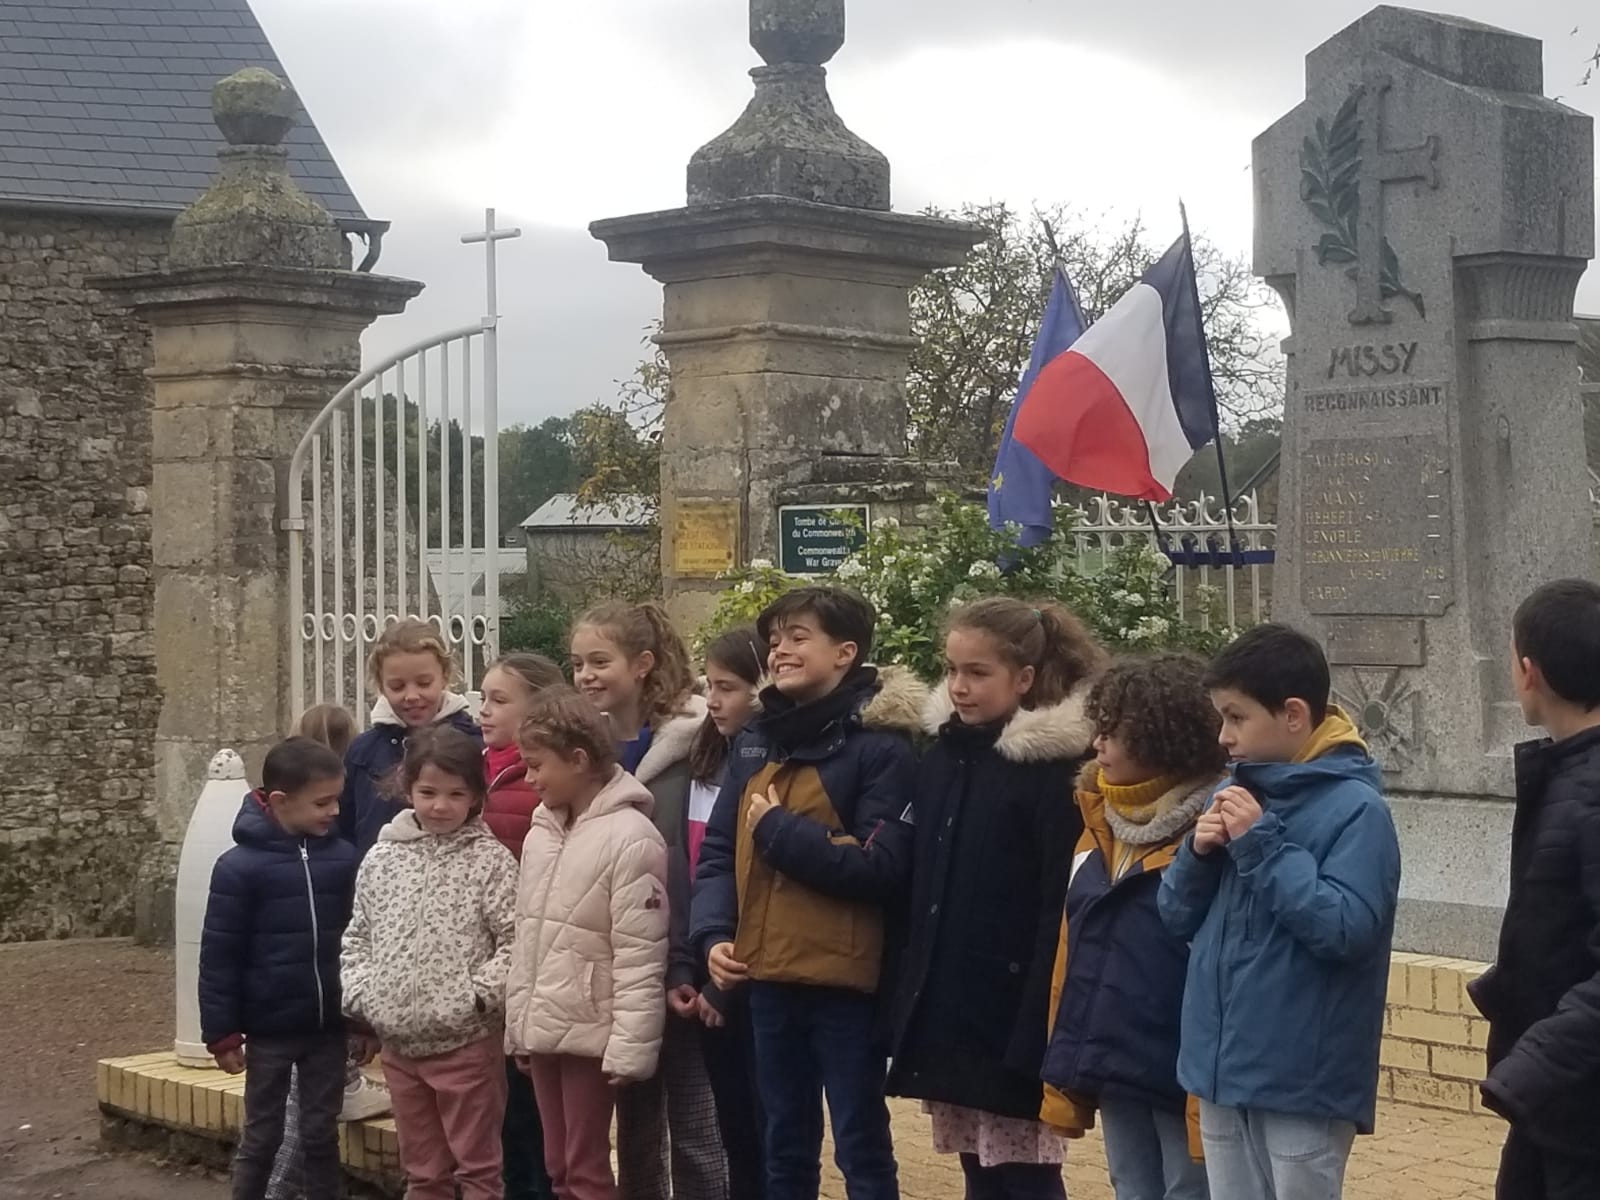 Enfants de l ecole devant monument aux morts de missy 2